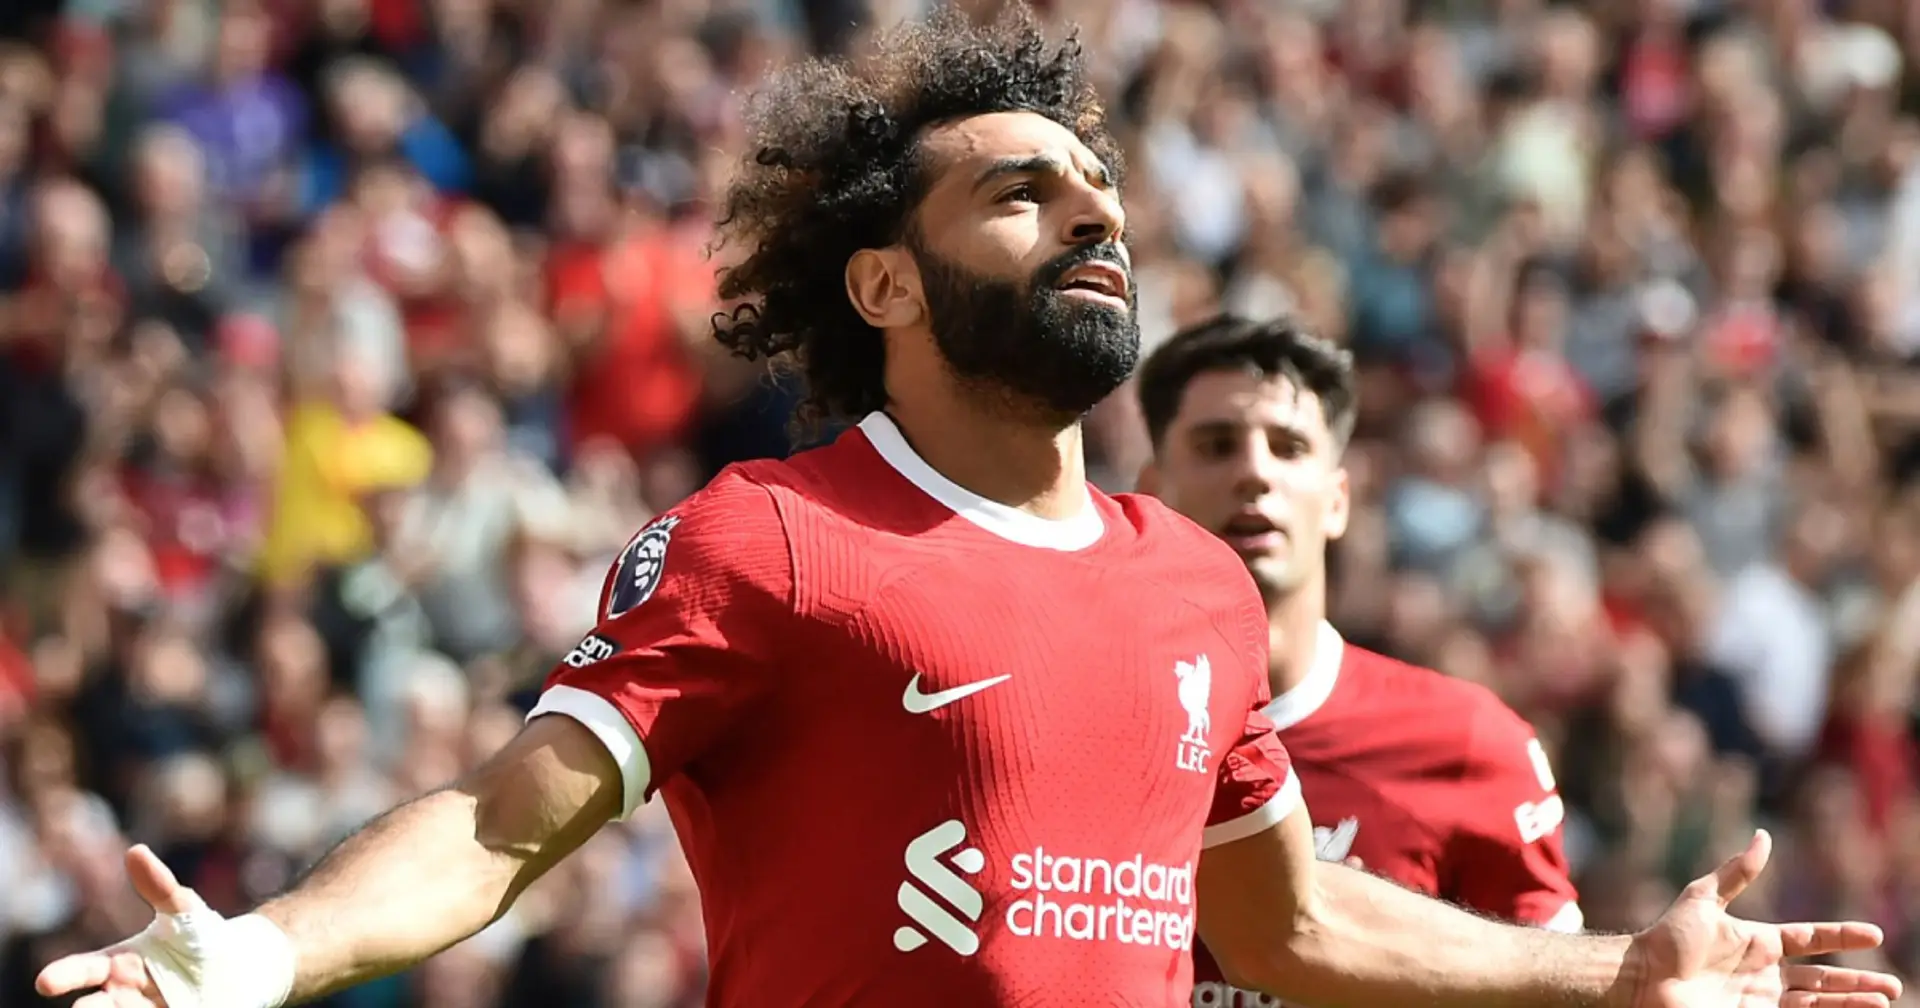 Al-Ittihad bereitet neues Angebot für Salah vor, Summe bekannt - Sky Sports